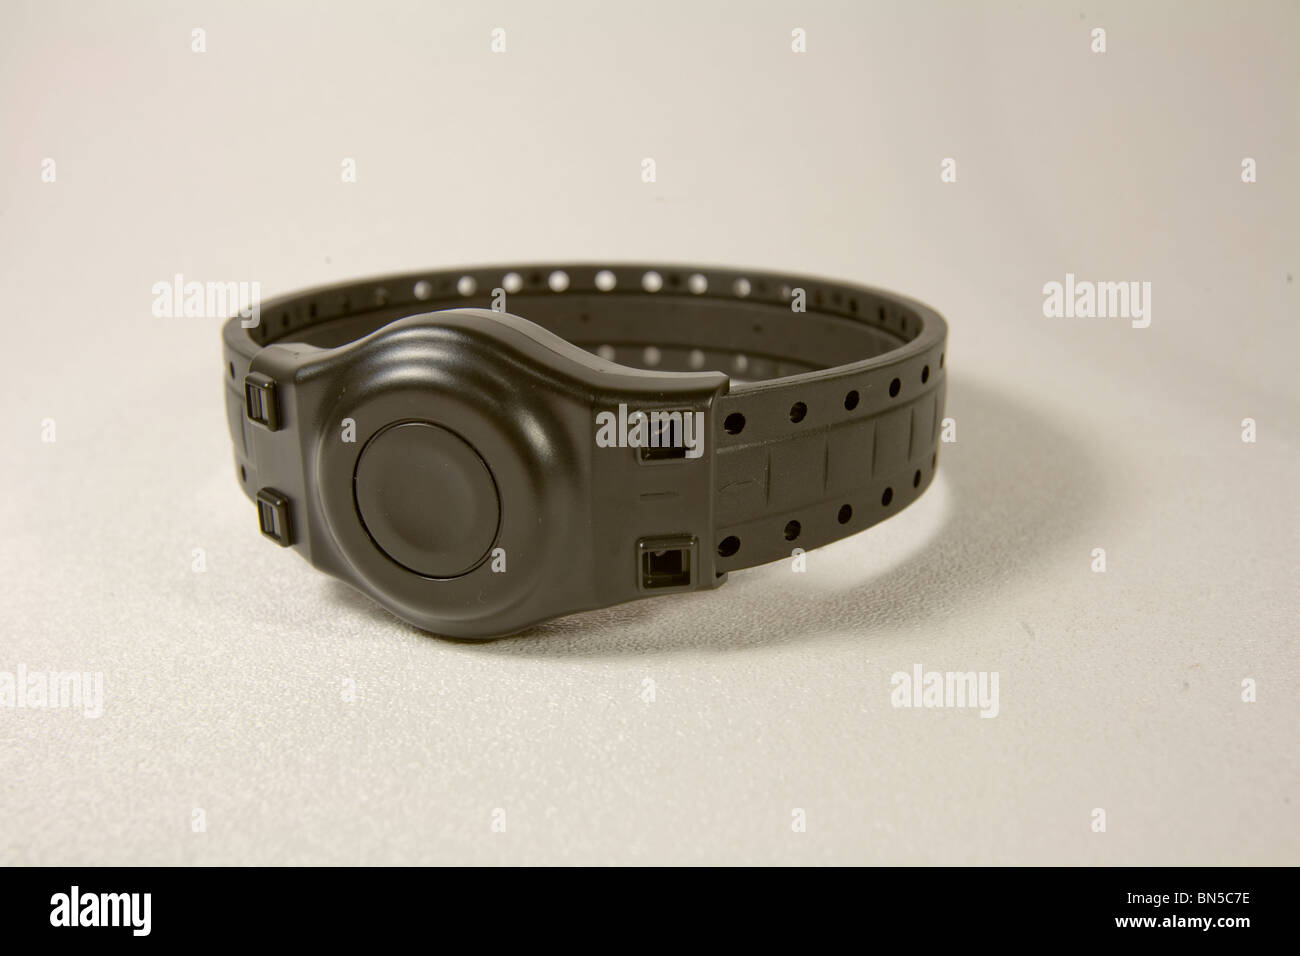 Electronic monitoring device aka ankle bracelet. Stock Photo